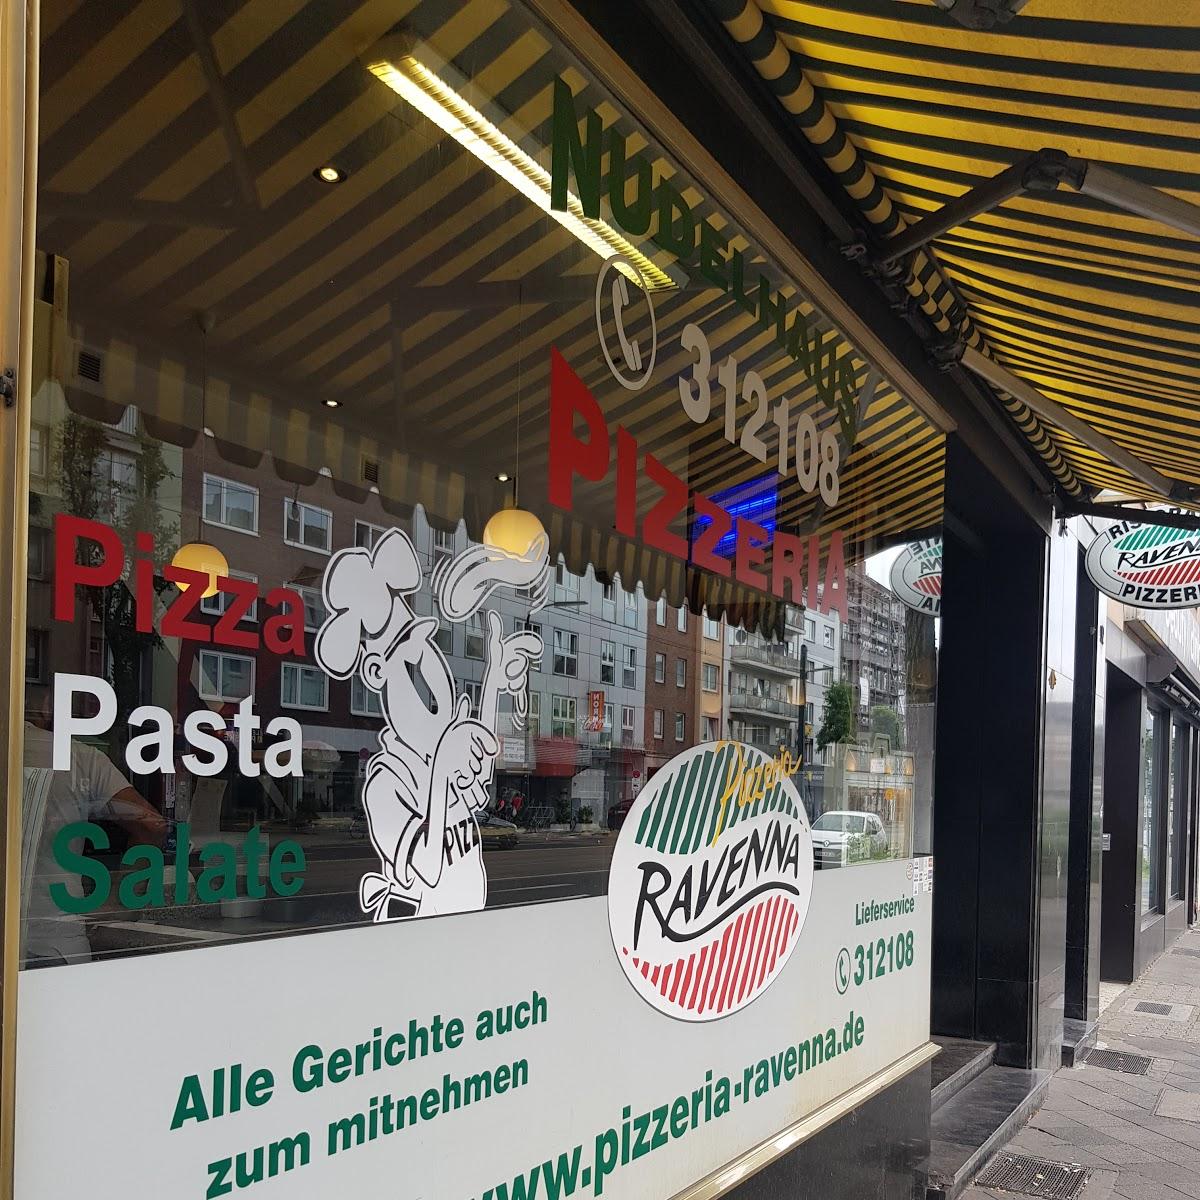 Restaurant "Pizzeria Ravenna" in Düsseldorf